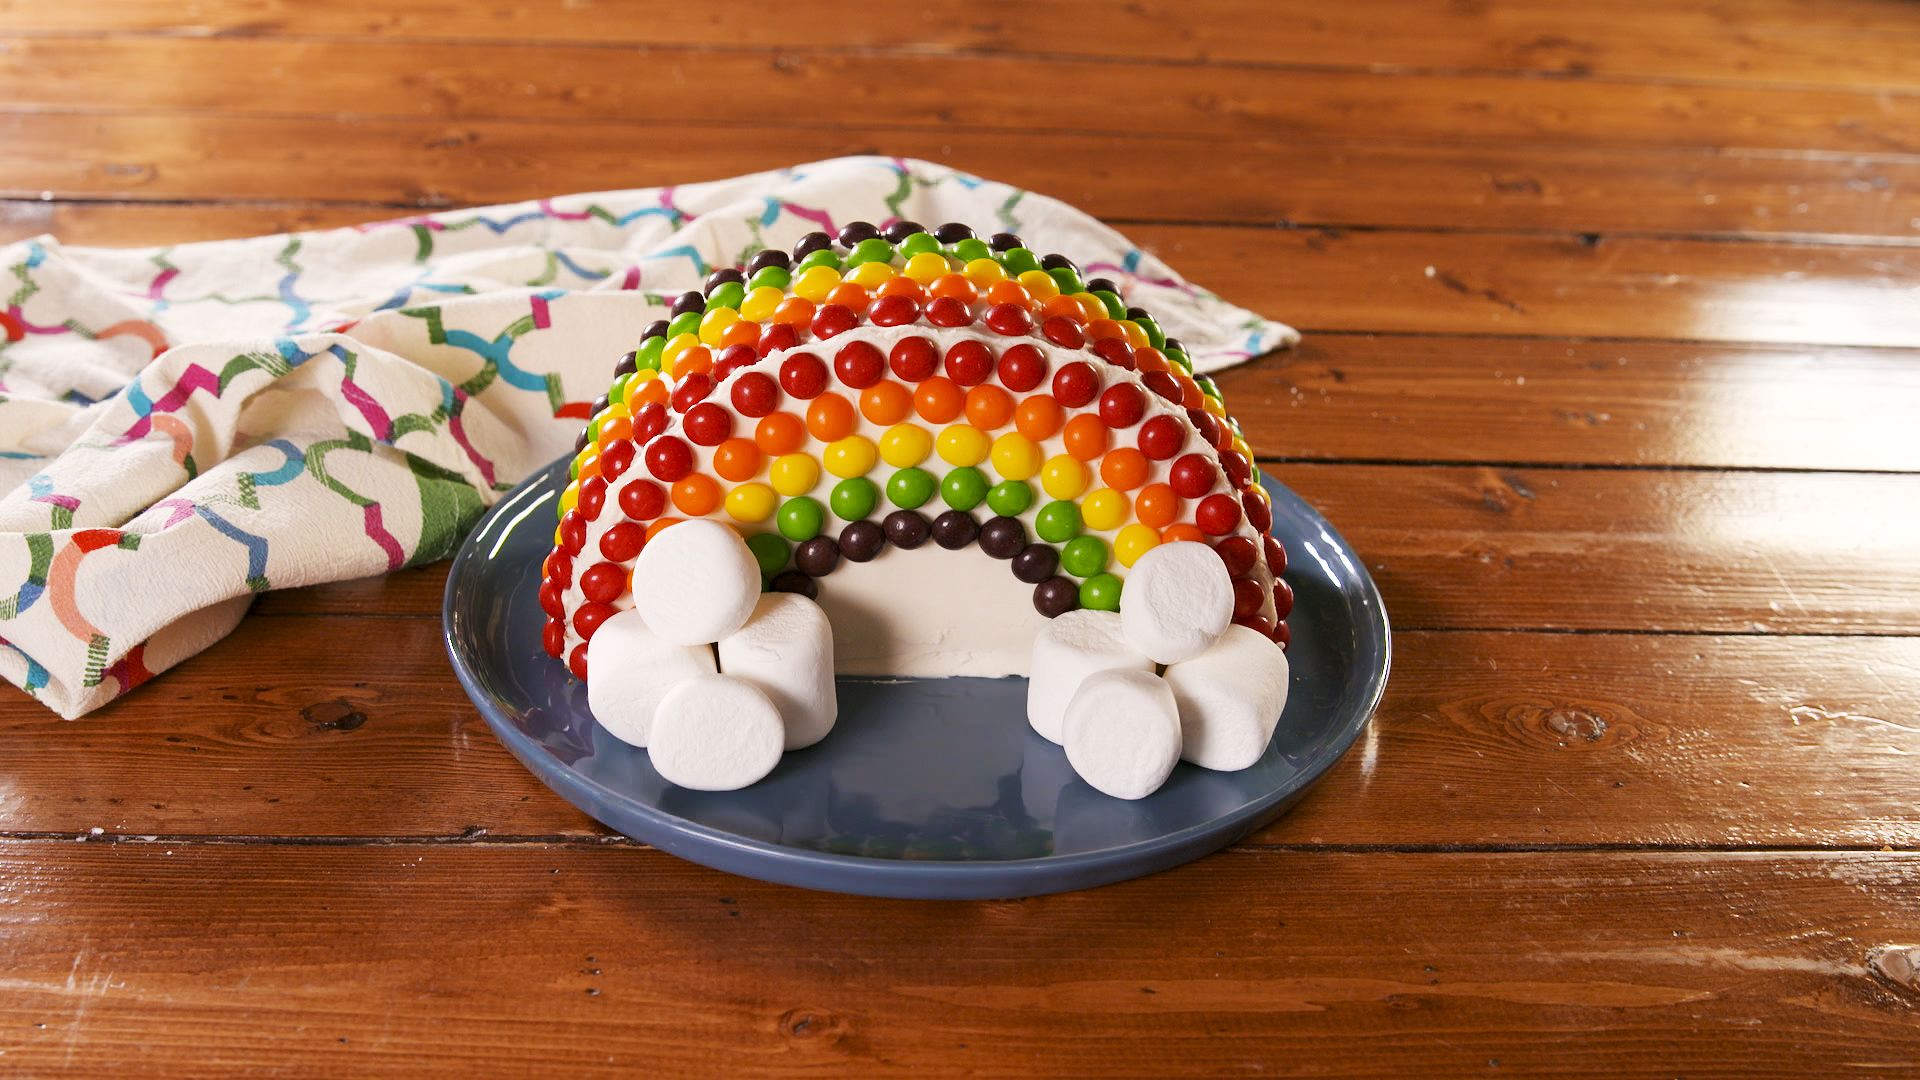 Rainbow Shaped Cake - CakeCentral.com